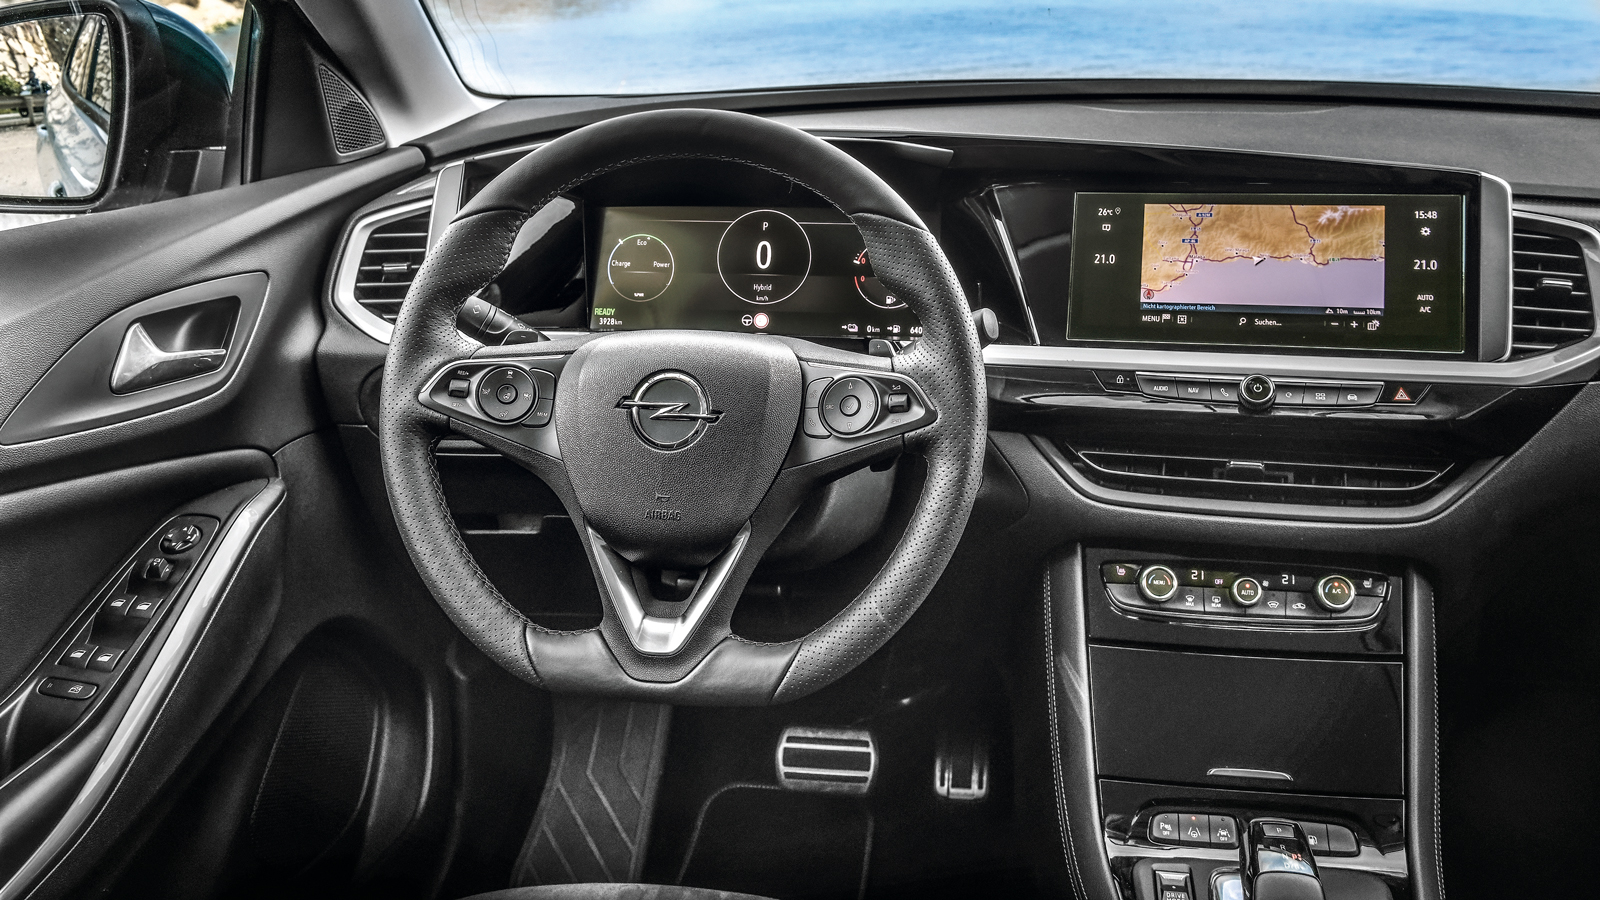 «Κλασική» σχεδίαση για το εσωτερικό του Opel, με τις μεγάλες οθόνες και τα φυσικά κουμπιά να ξεχωρίζουν